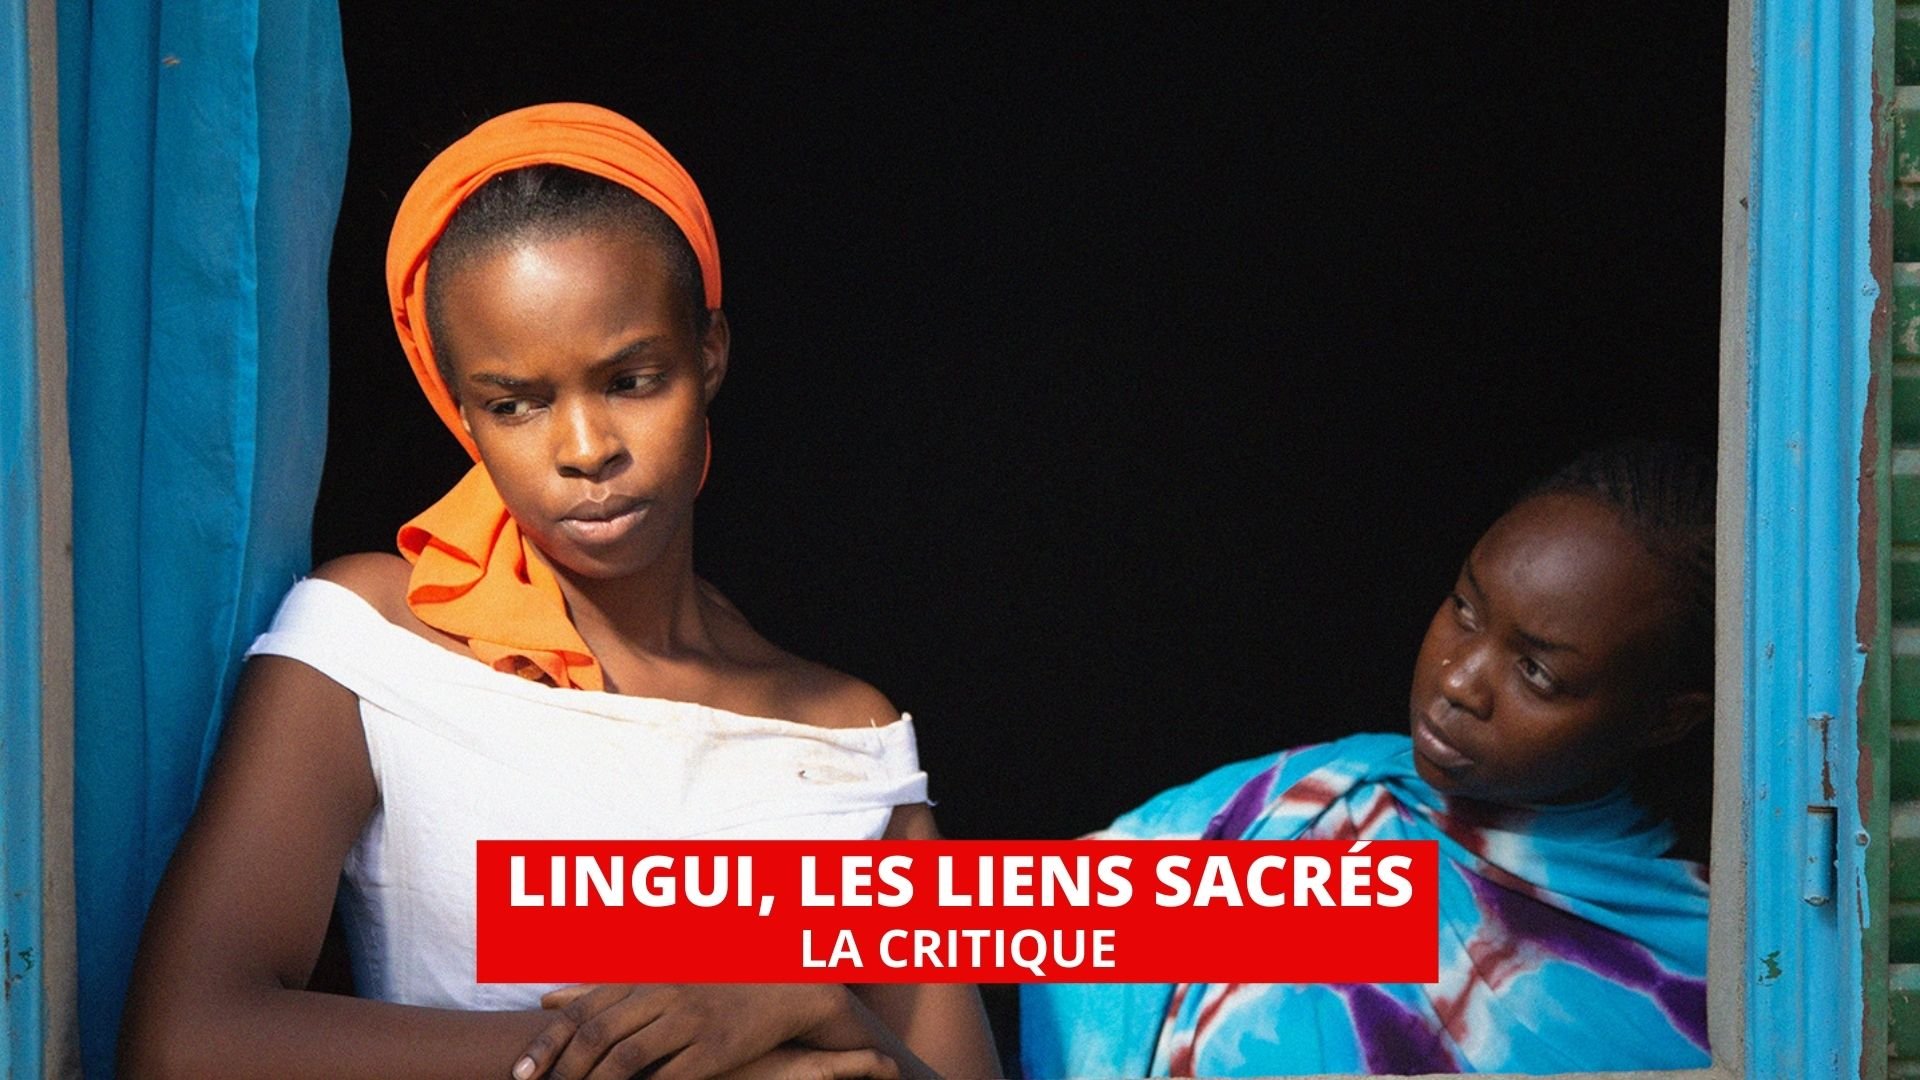 Lingui, les liens sacrés : un film politique sur la condition des femmes au Tchad